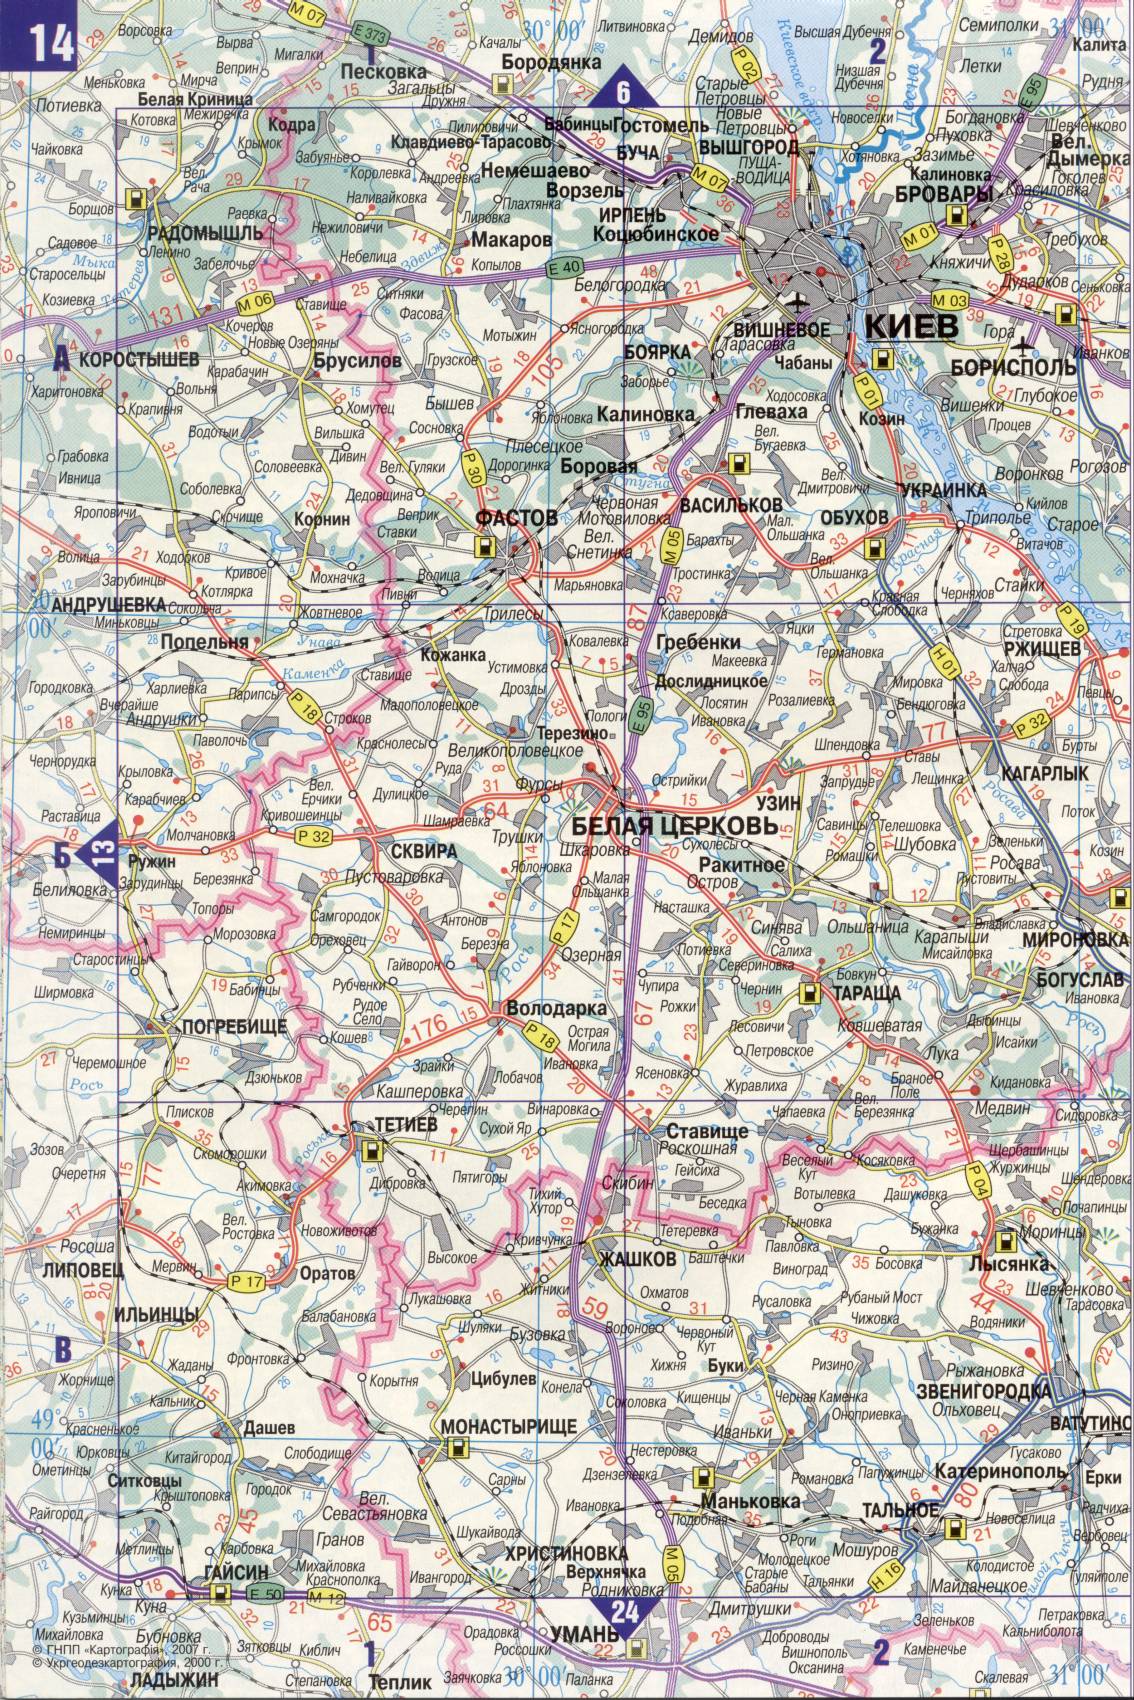 Carte de l'Ukraine. Détaillée carte routière de l'Ukraine de satin. télécharger gratuitement, E1